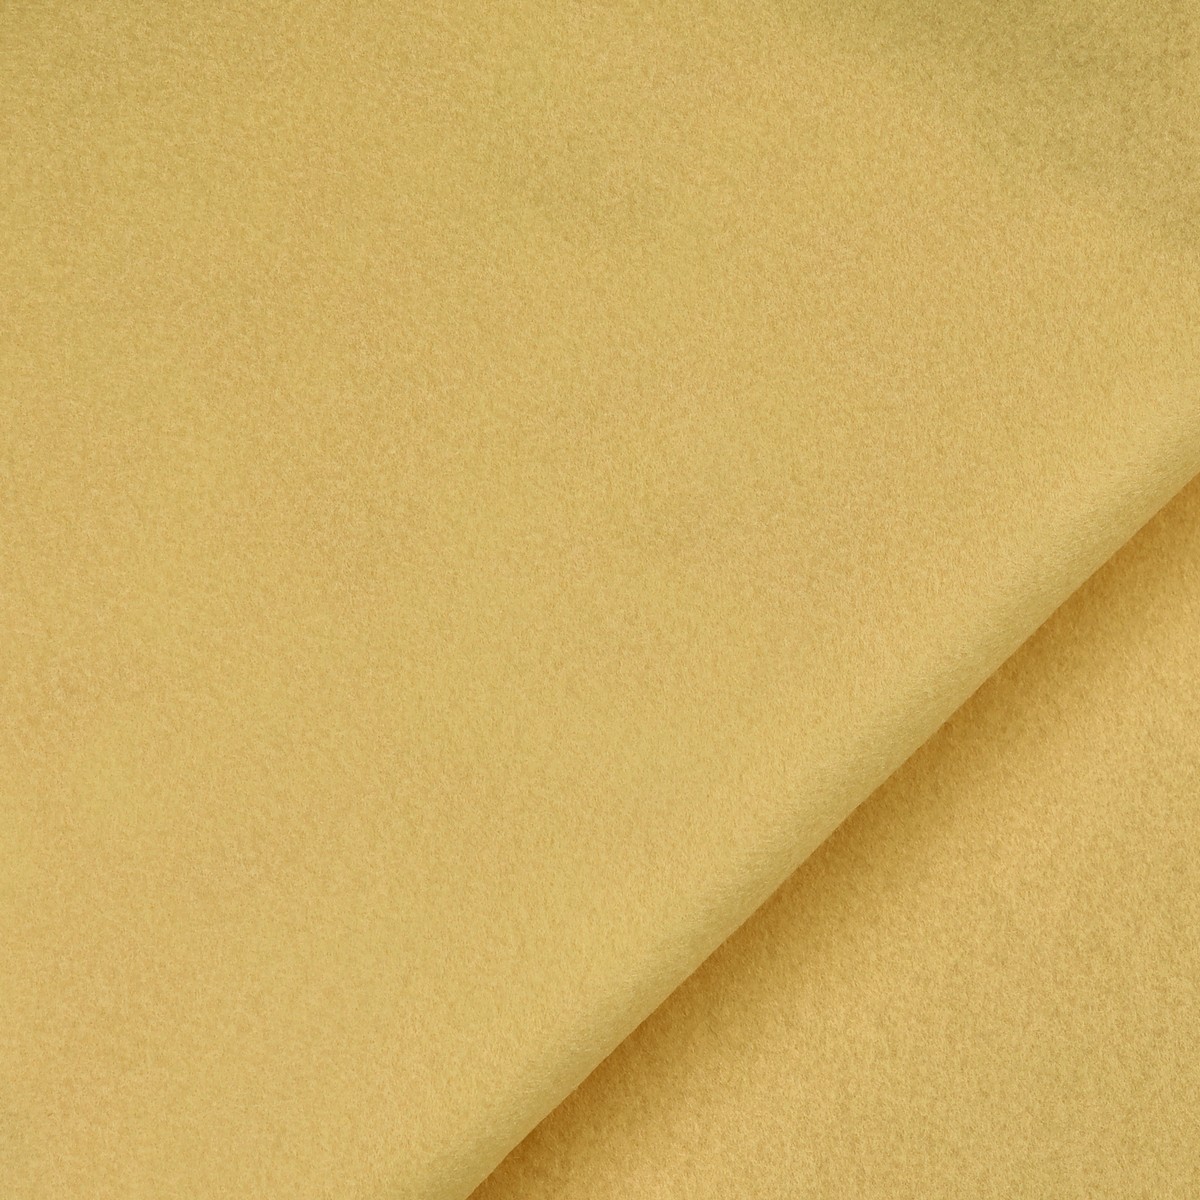 Pannelli Pannolenci - Colore Giallo Baby - Misura 50x70cm - www